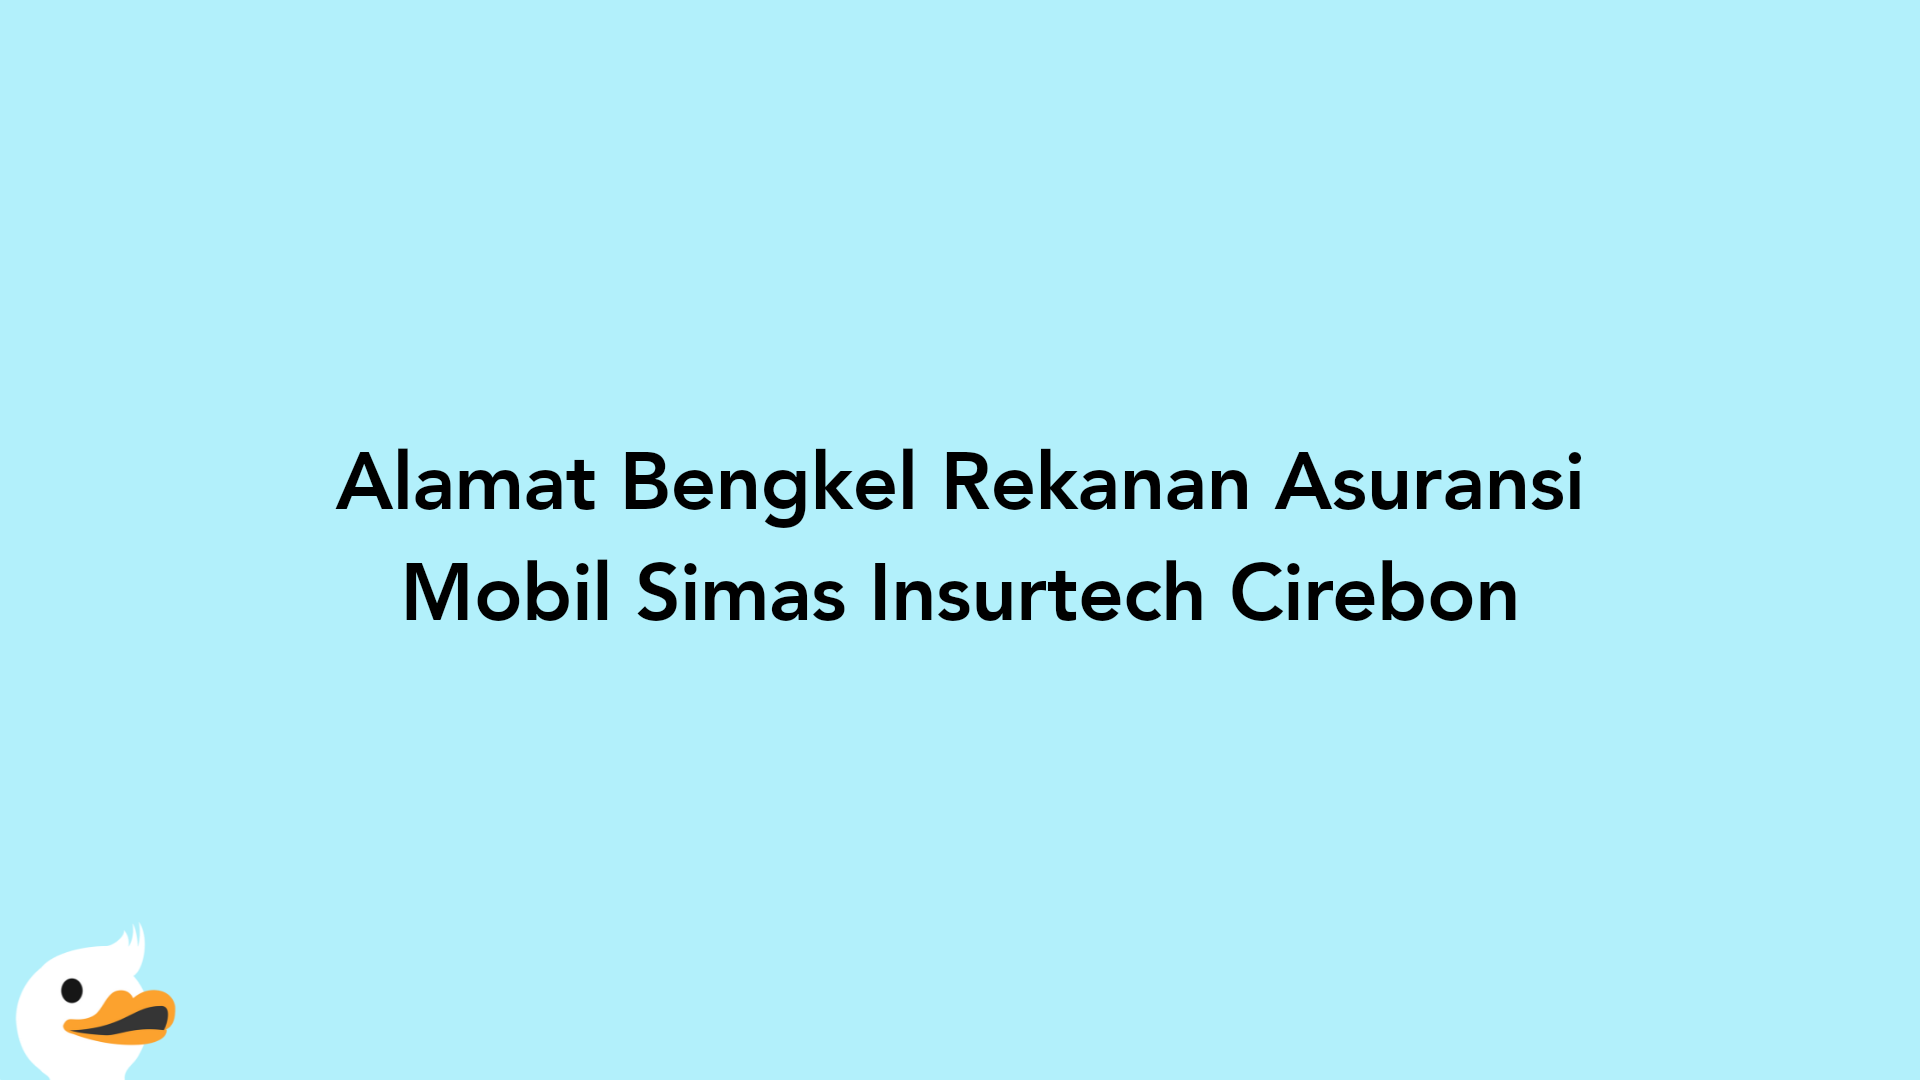 Alamat Bengkel Rekanan Asuransi Mobil Simas Insurtech Cirebon